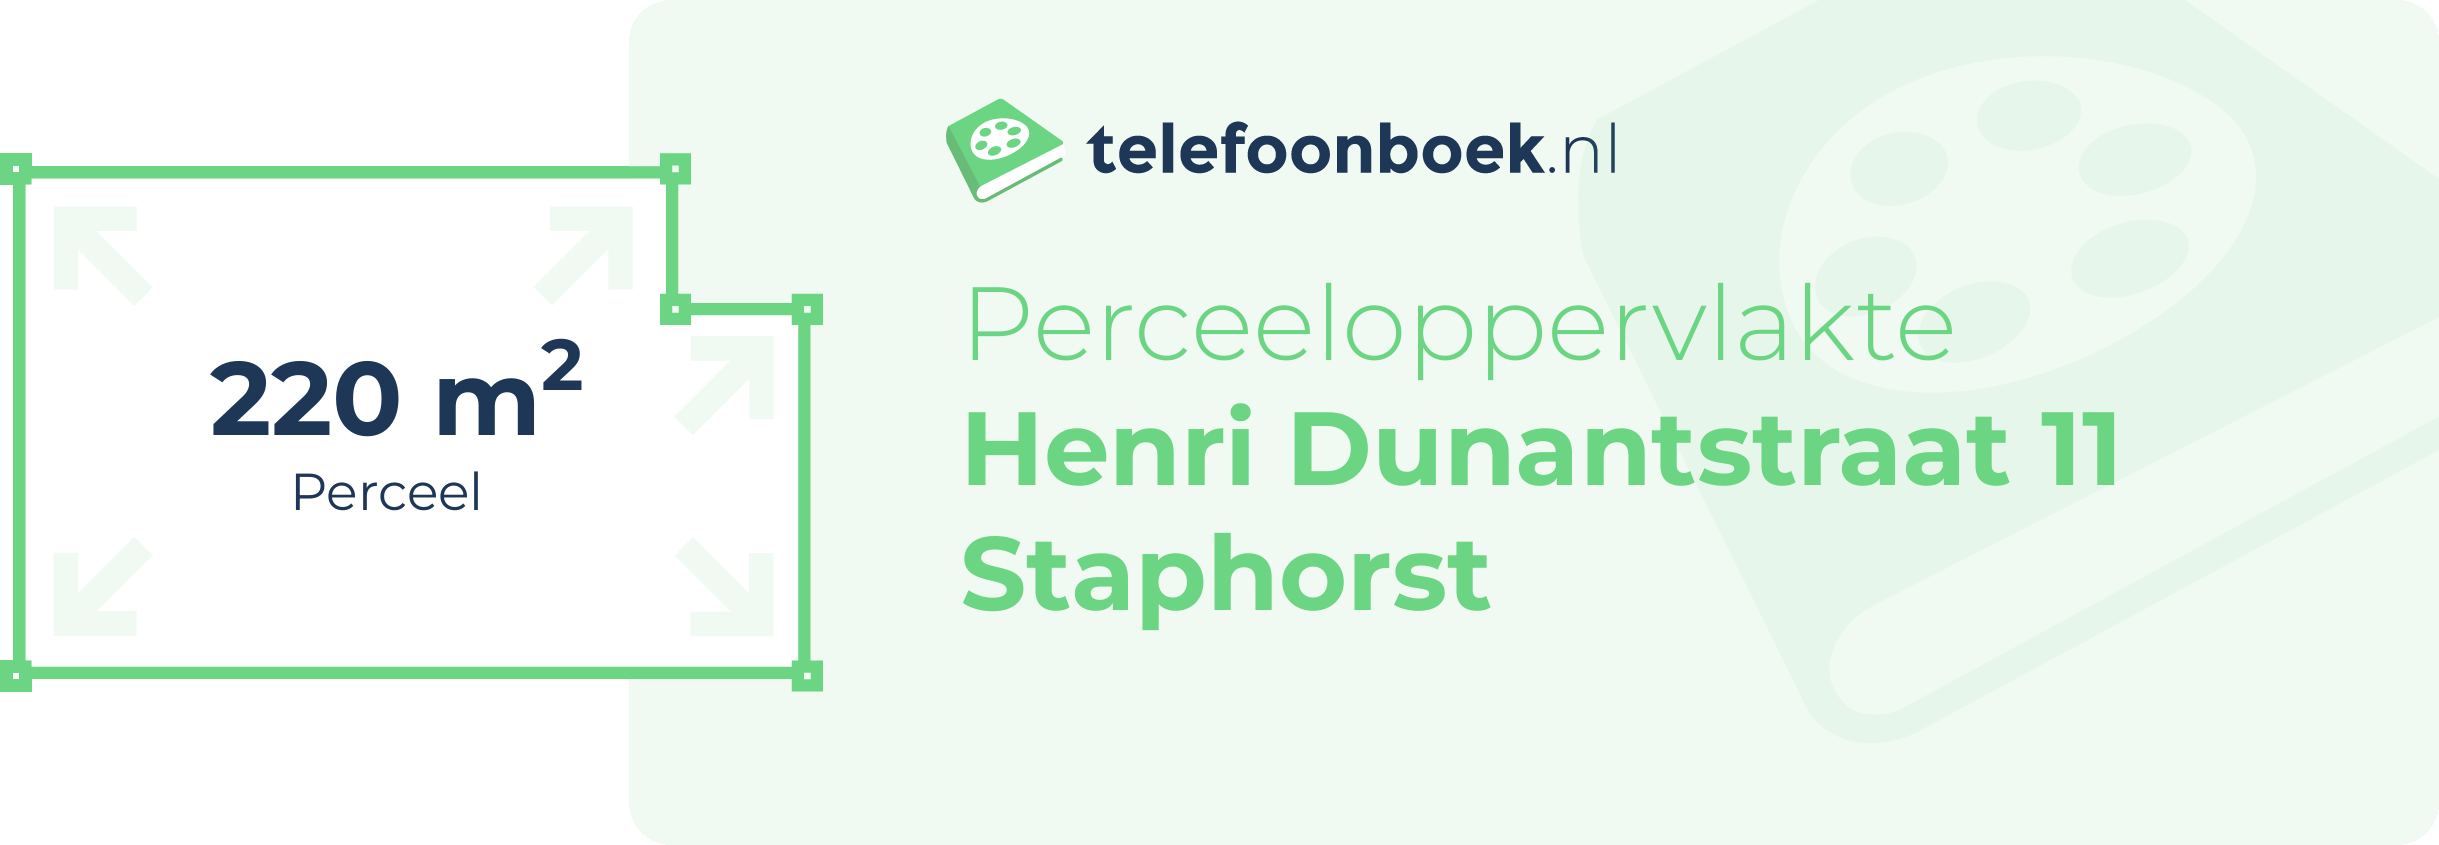 Perceeloppervlakte Henri Dunantstraat 11 Staphorst